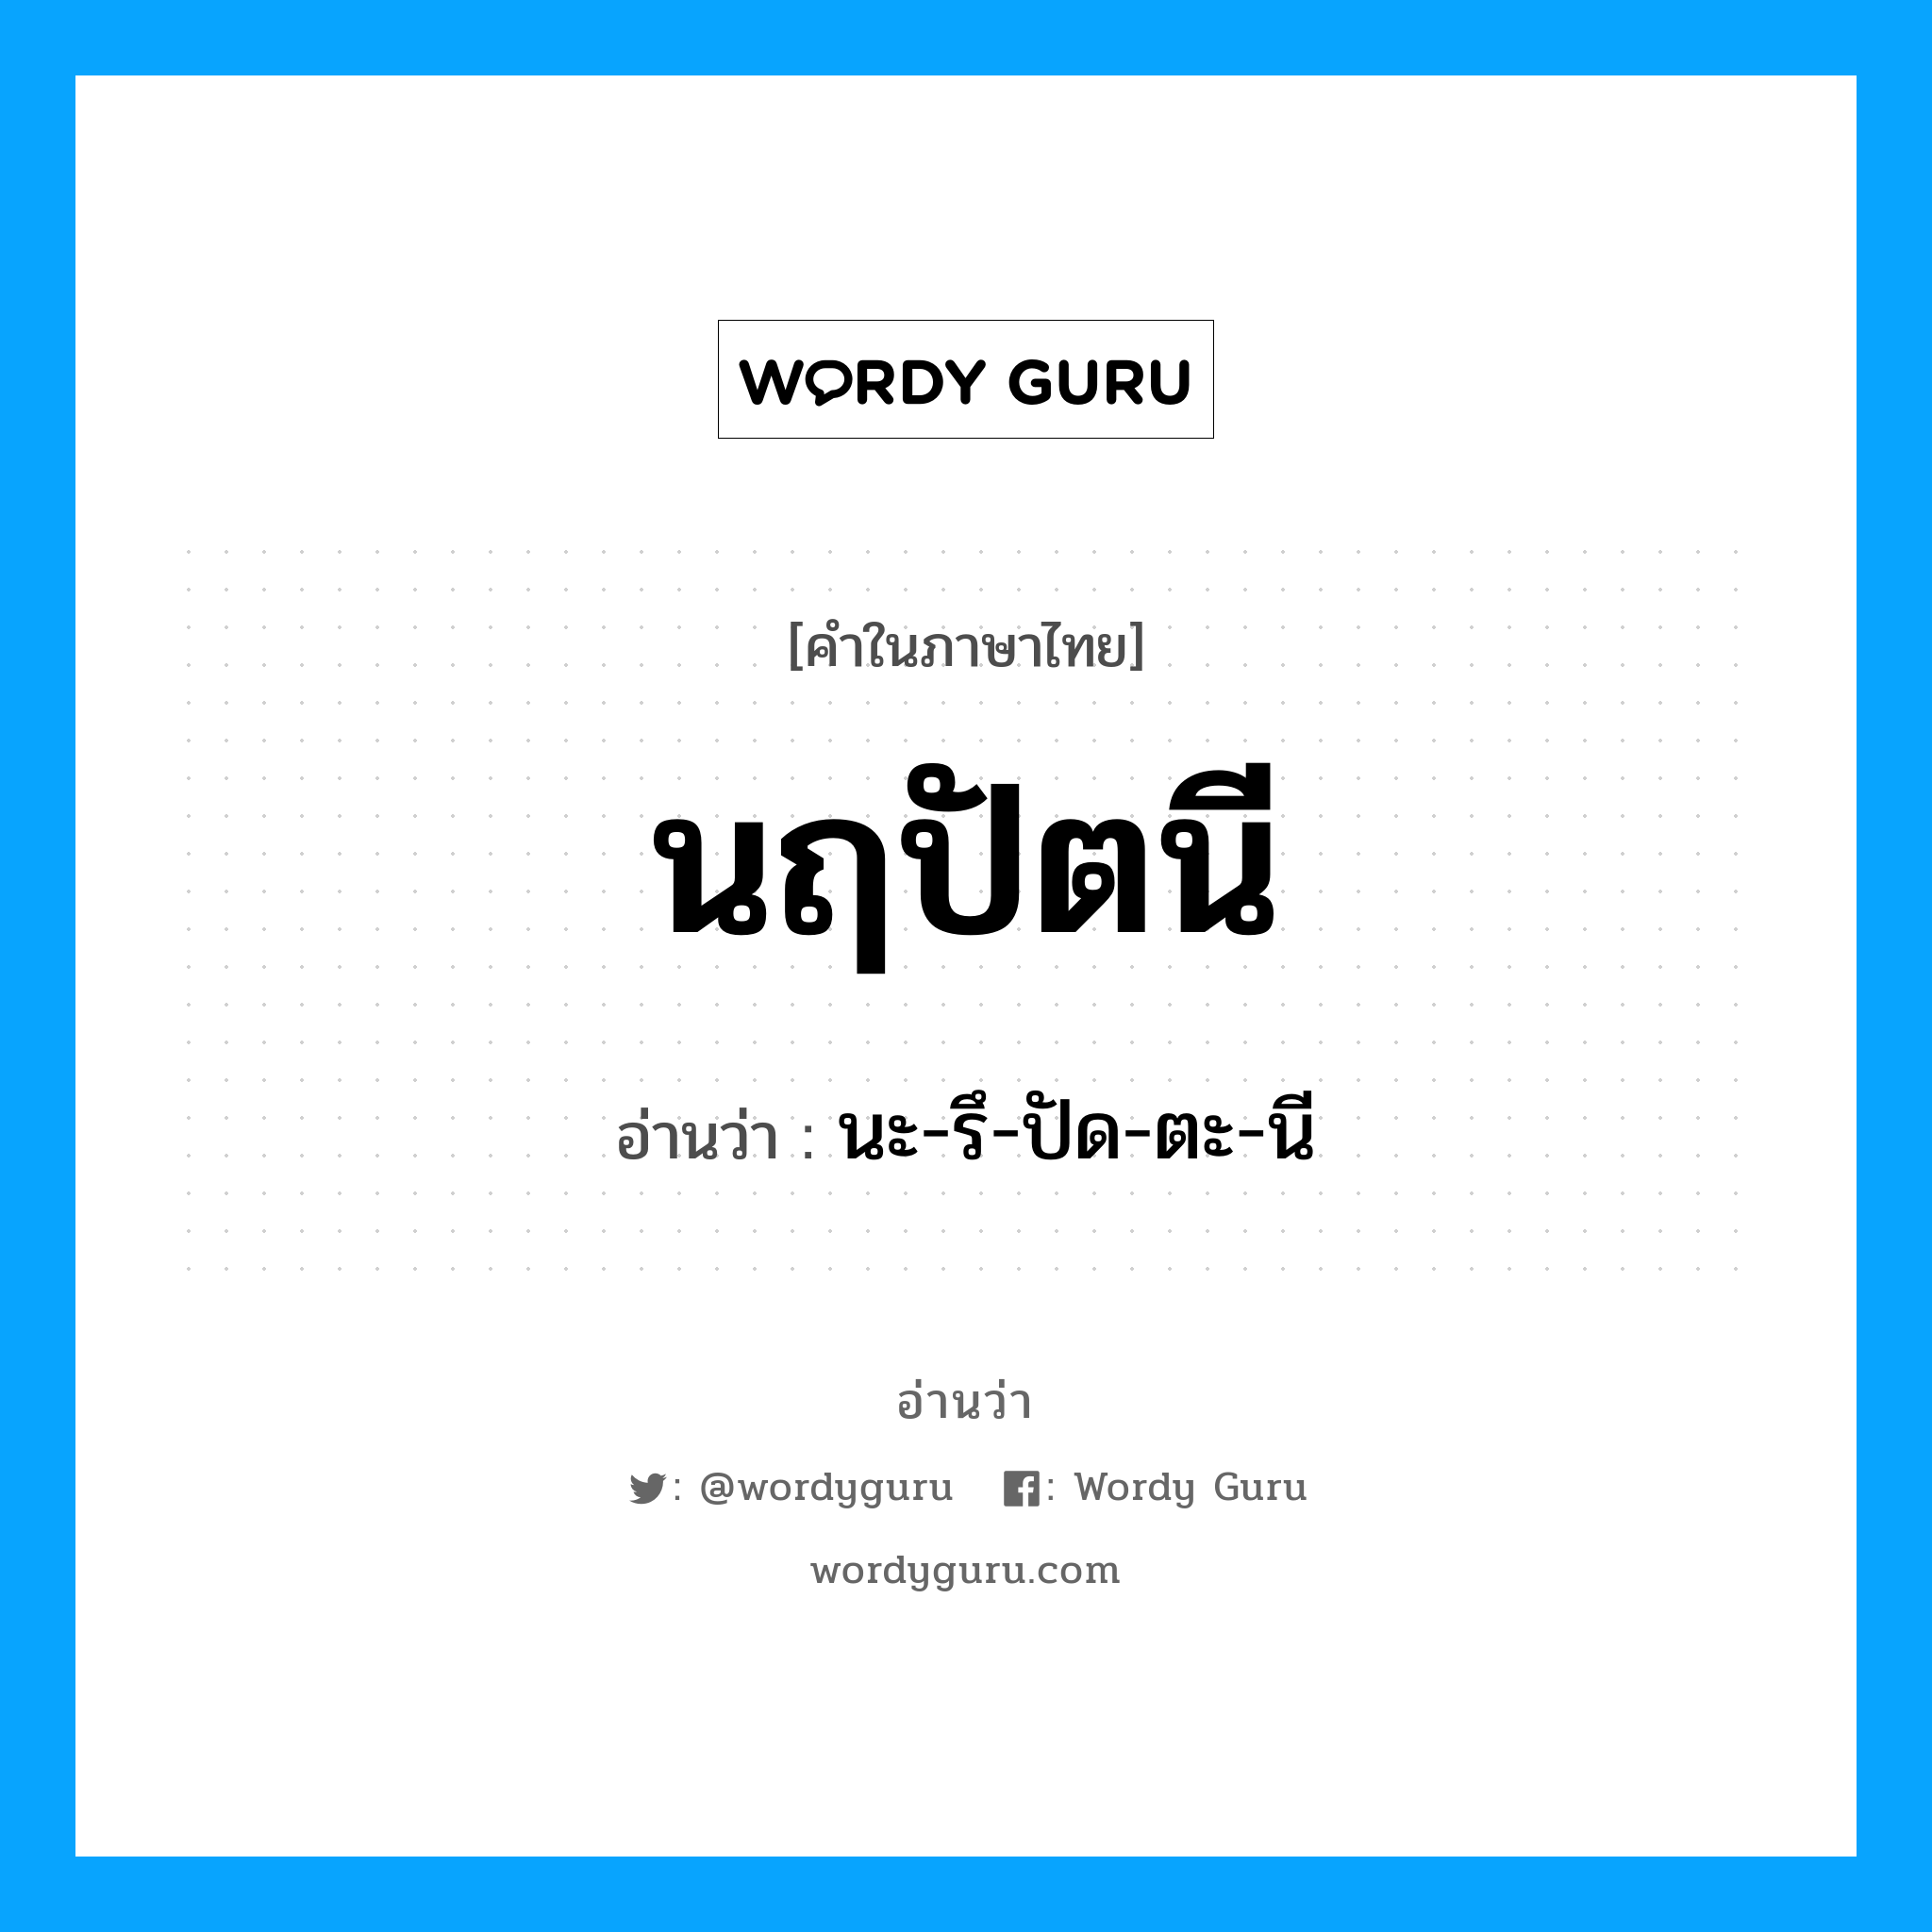 นะ-รึ-ปัด-ตะ-นี เป็นคำอ่านของคำไหน?, คำในภาษาไทย นะ-รึ-ปัด-ตะ-นี อ่านว่า นฤปัตนี